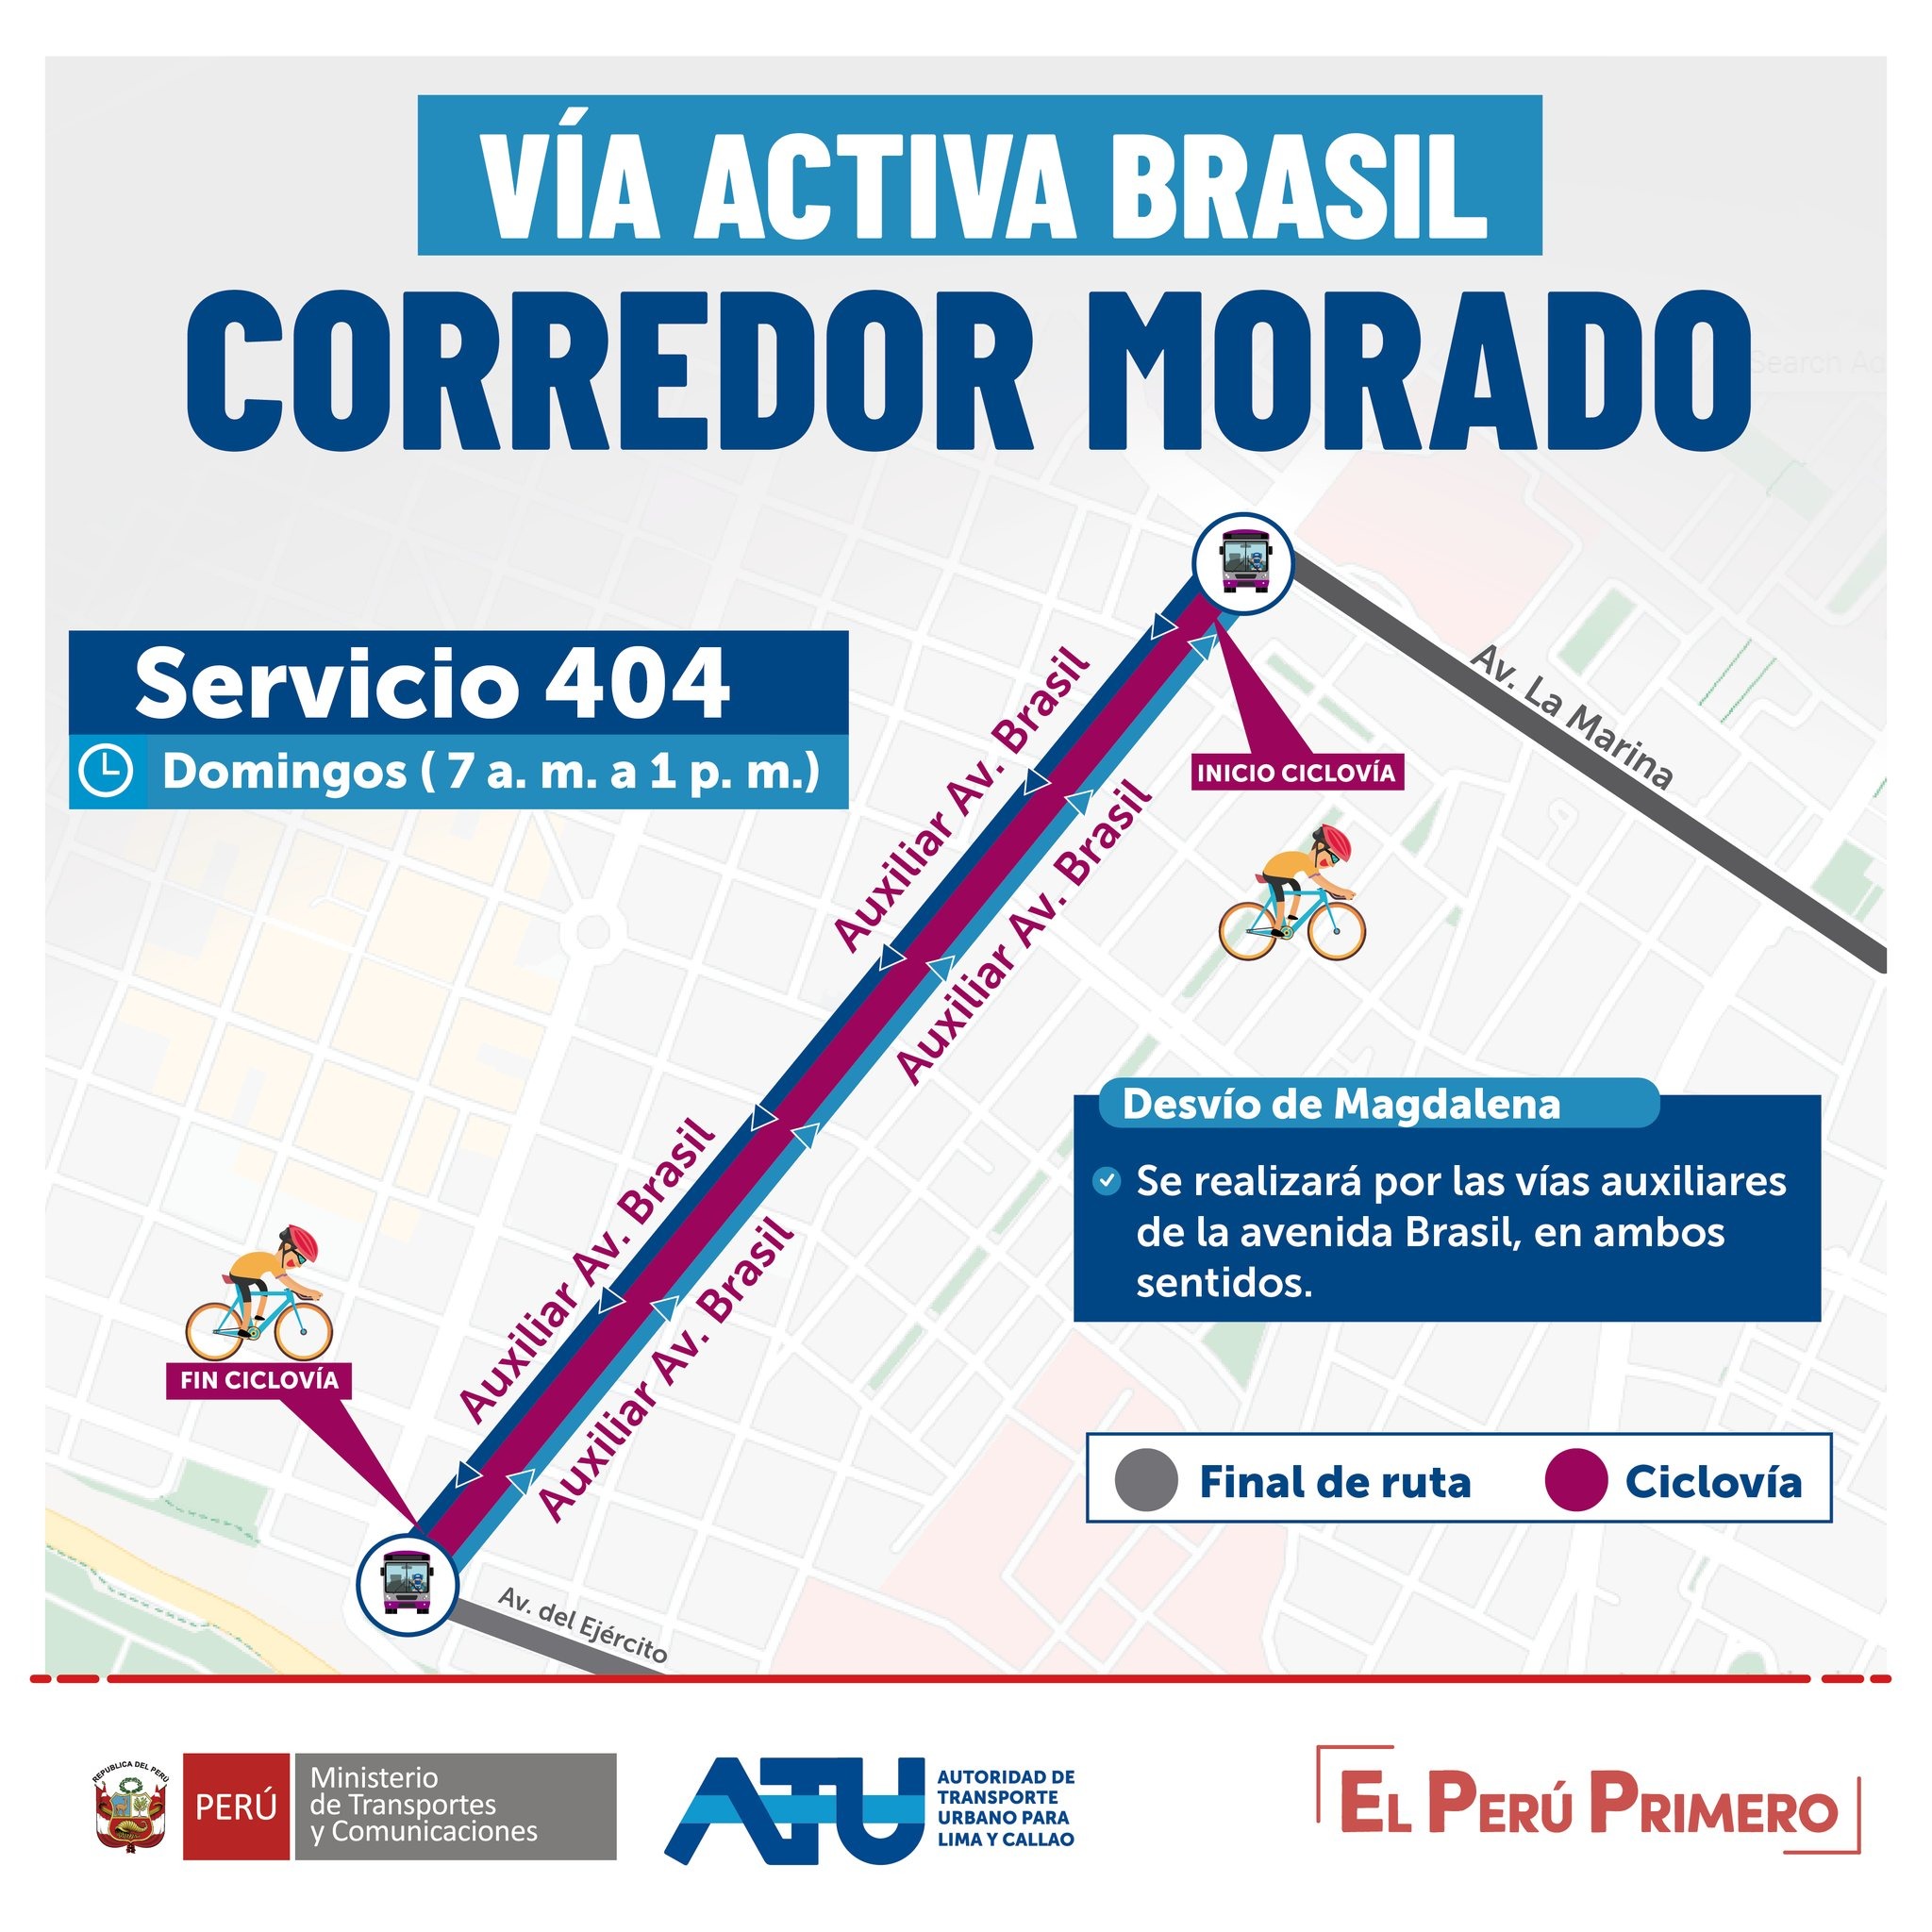 Corredores Azul y Morado: Revisa el plan de desvío de rutas ante cierre de avenidas Arequipa y Brasil